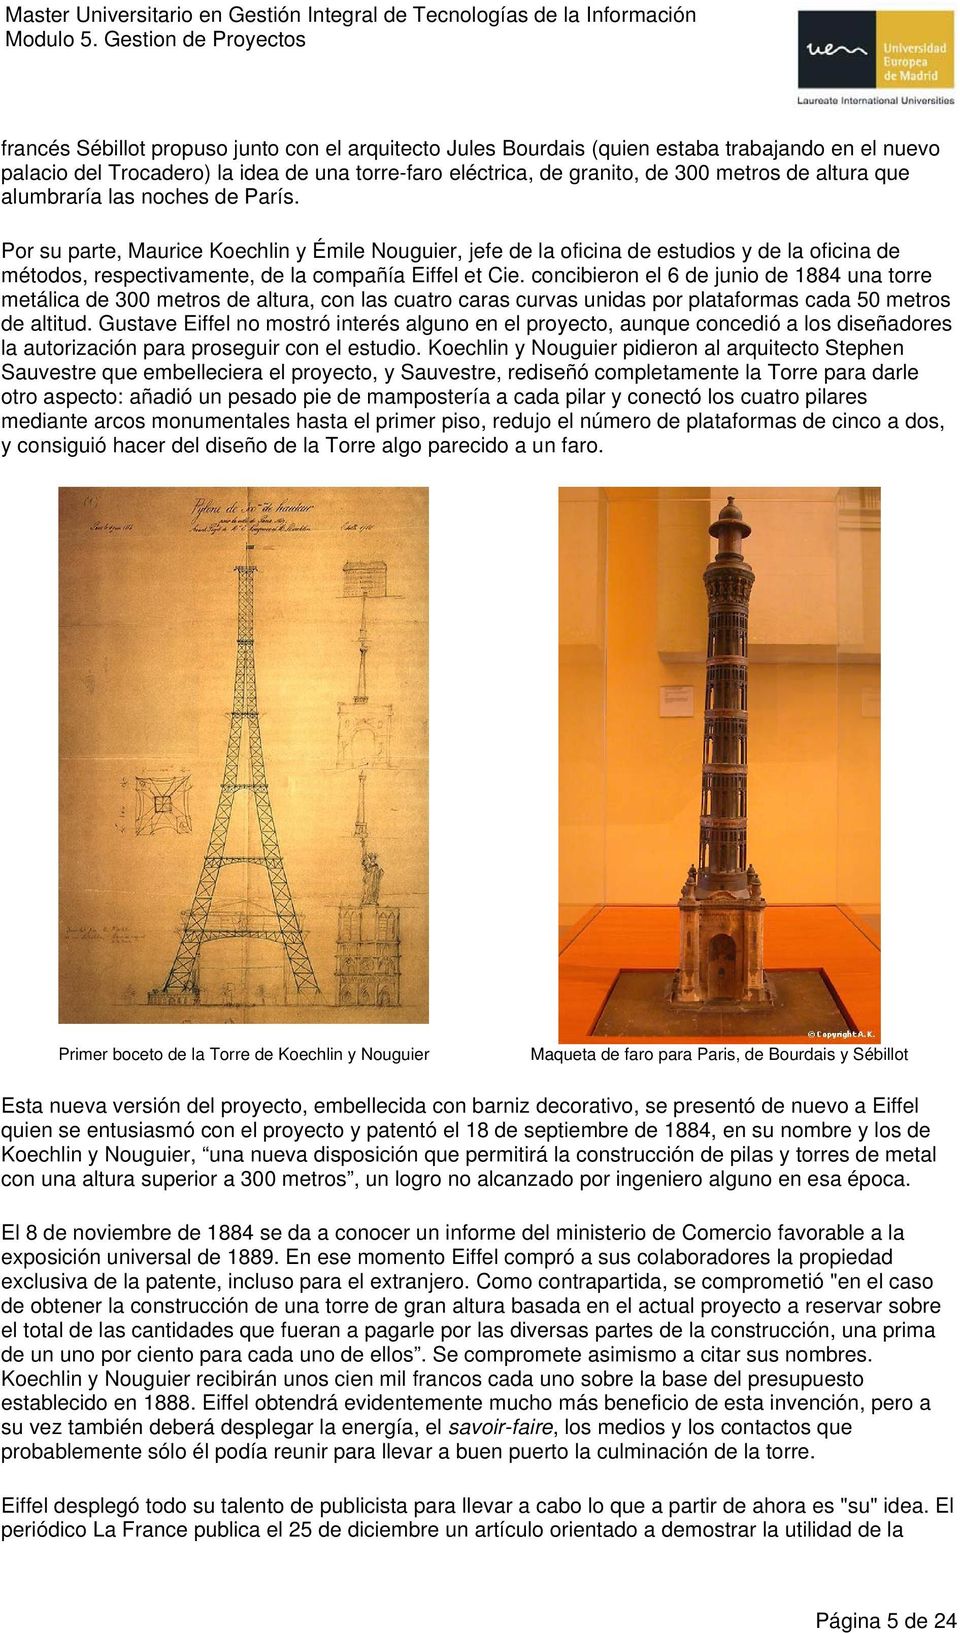 concibieron el 6 de junio de 1884 una torre metálica de 300 metros de altura, con las cuatro caras curvas unidas por plataformas cada 50 metros de altitud.